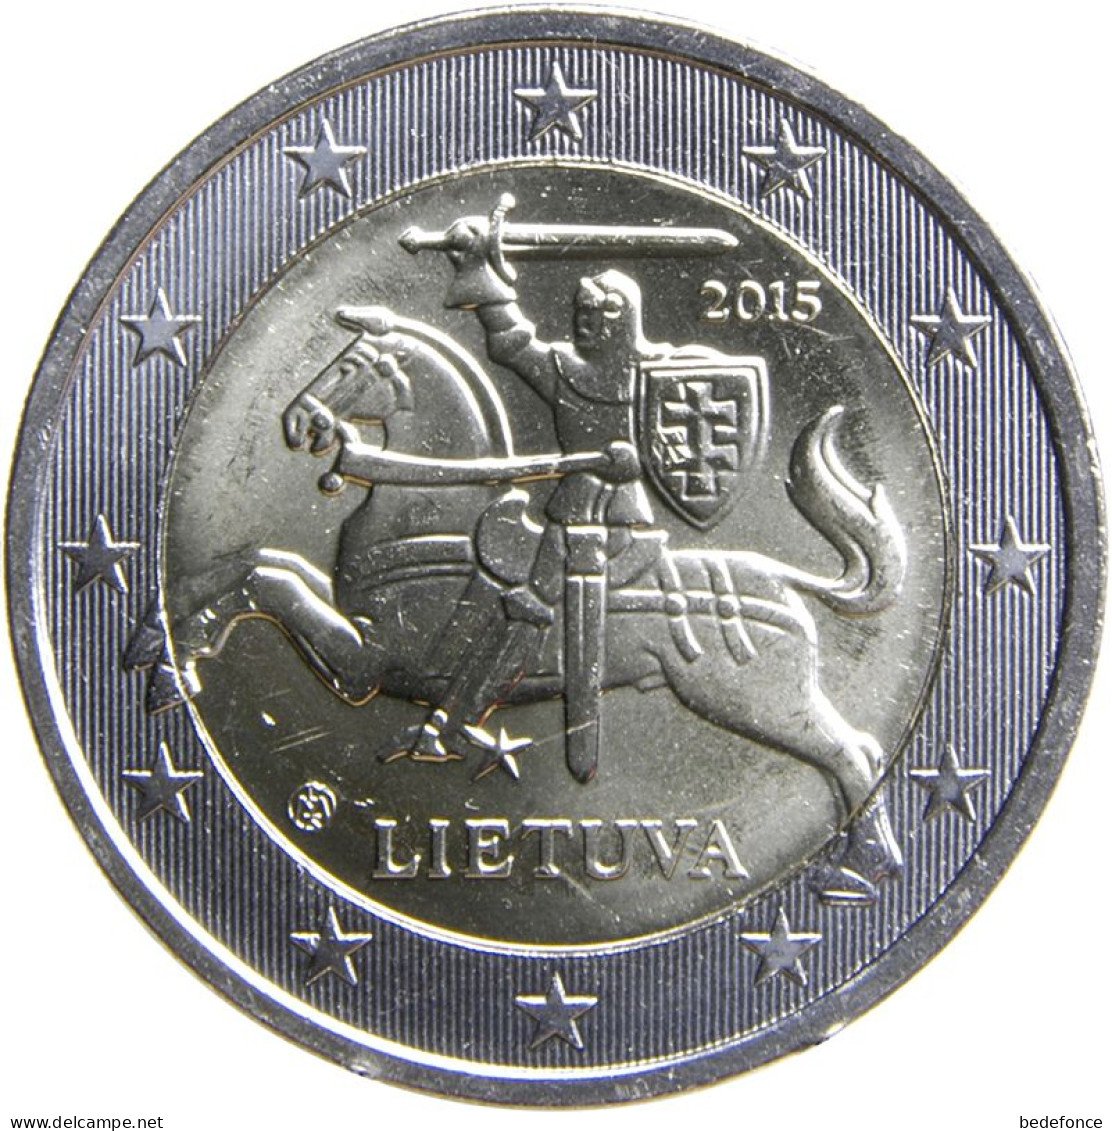 Monnaie - Lituanie - 2€ - 2015 - Lituania